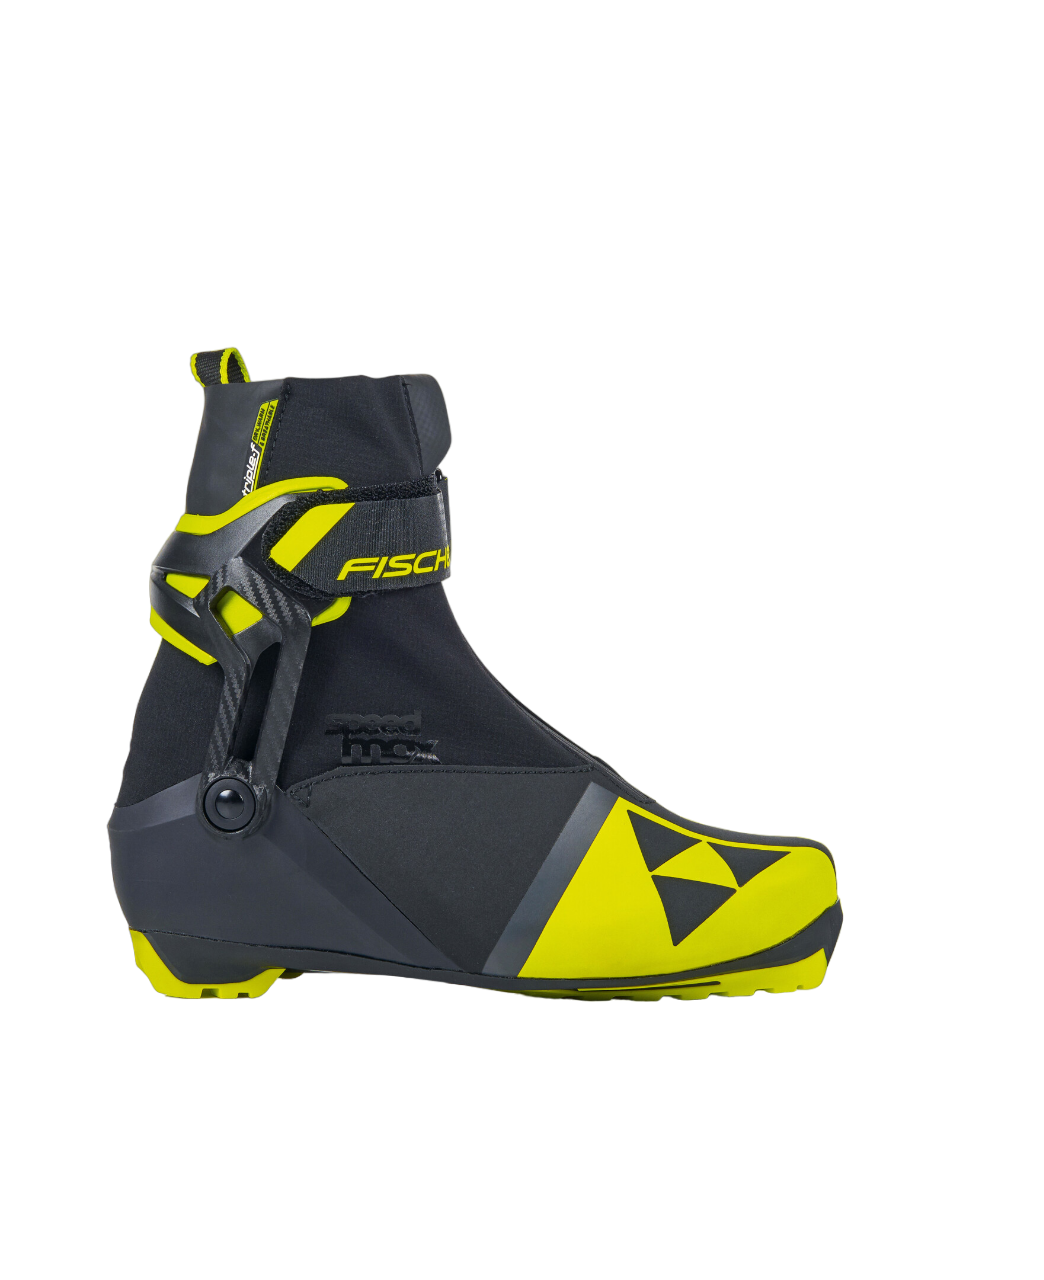 Лыжные ботинки NNN Fischer подростковые SPEEDMAX SKATE JR S40022 размер 42